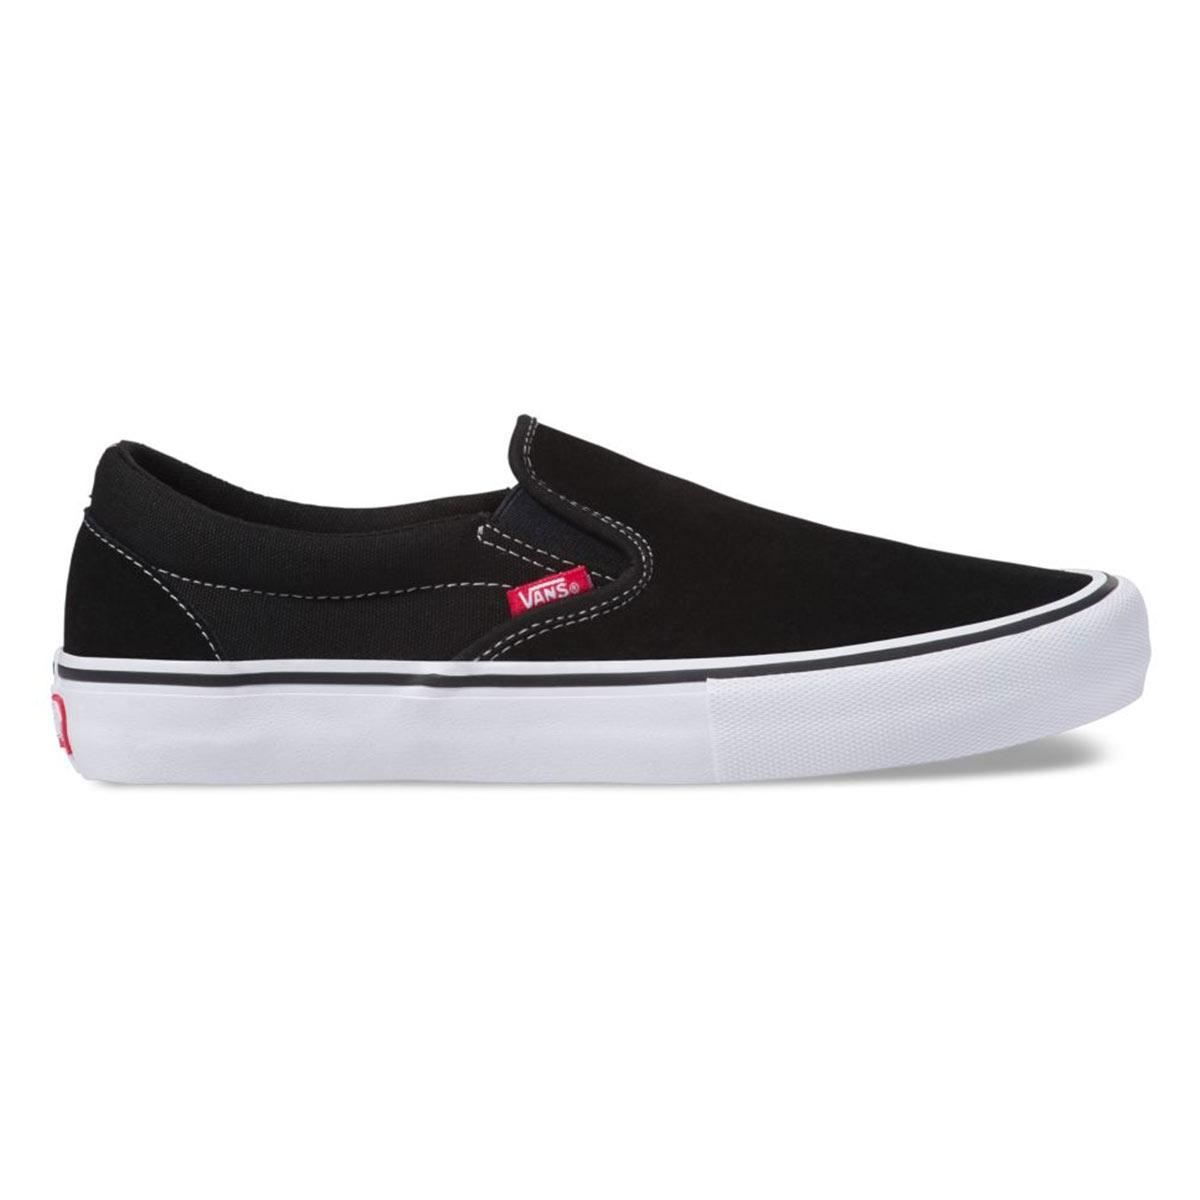 Vans Slip-On Shoe, Black/White/Gum